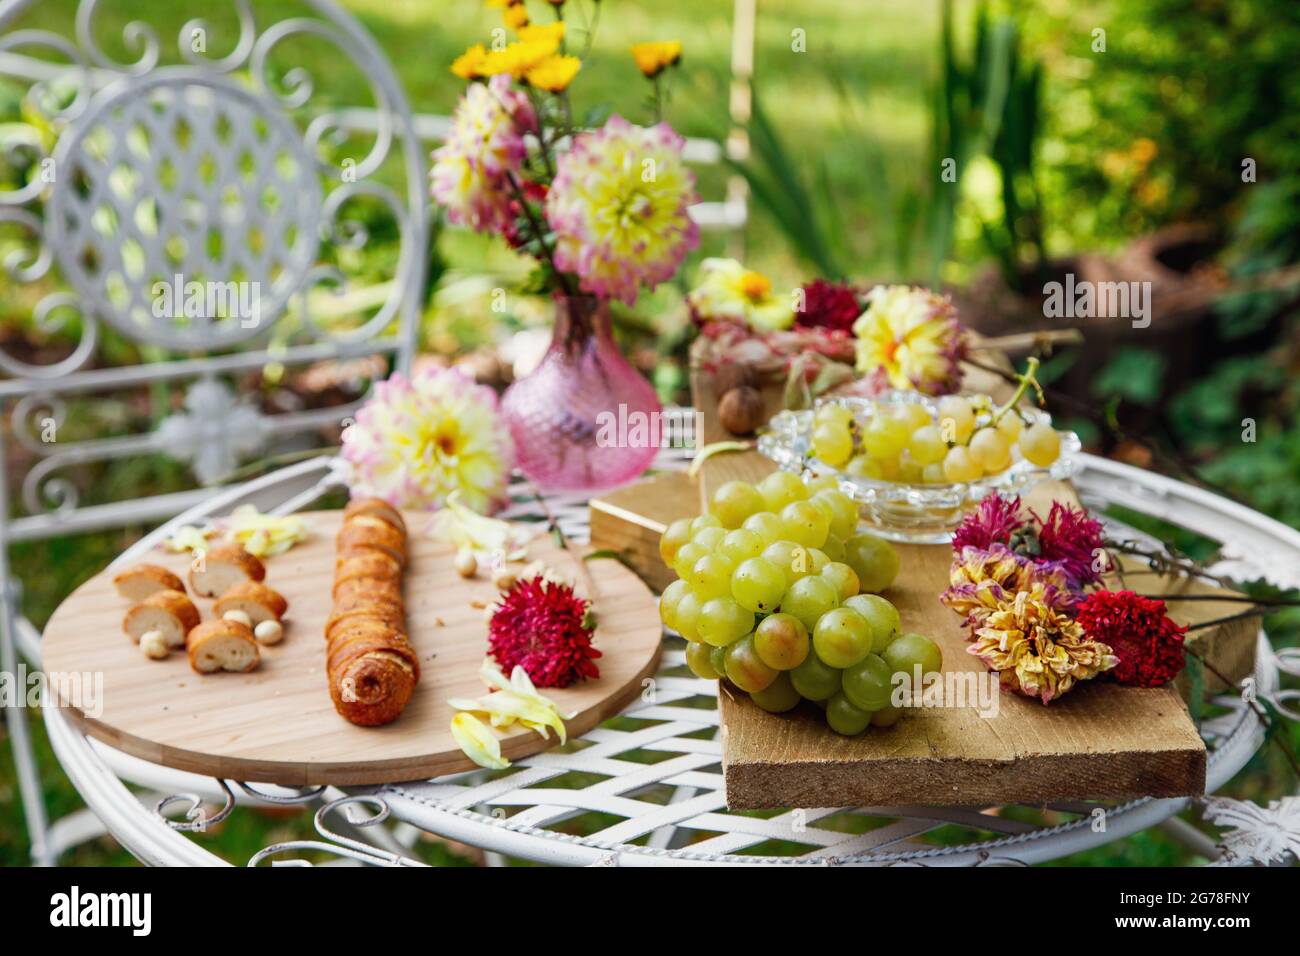 Table de jardin, pain, raisins, fleurs, encore la vie, Romantique, charme, cuisine française, méditerranéenne Banque D'Images